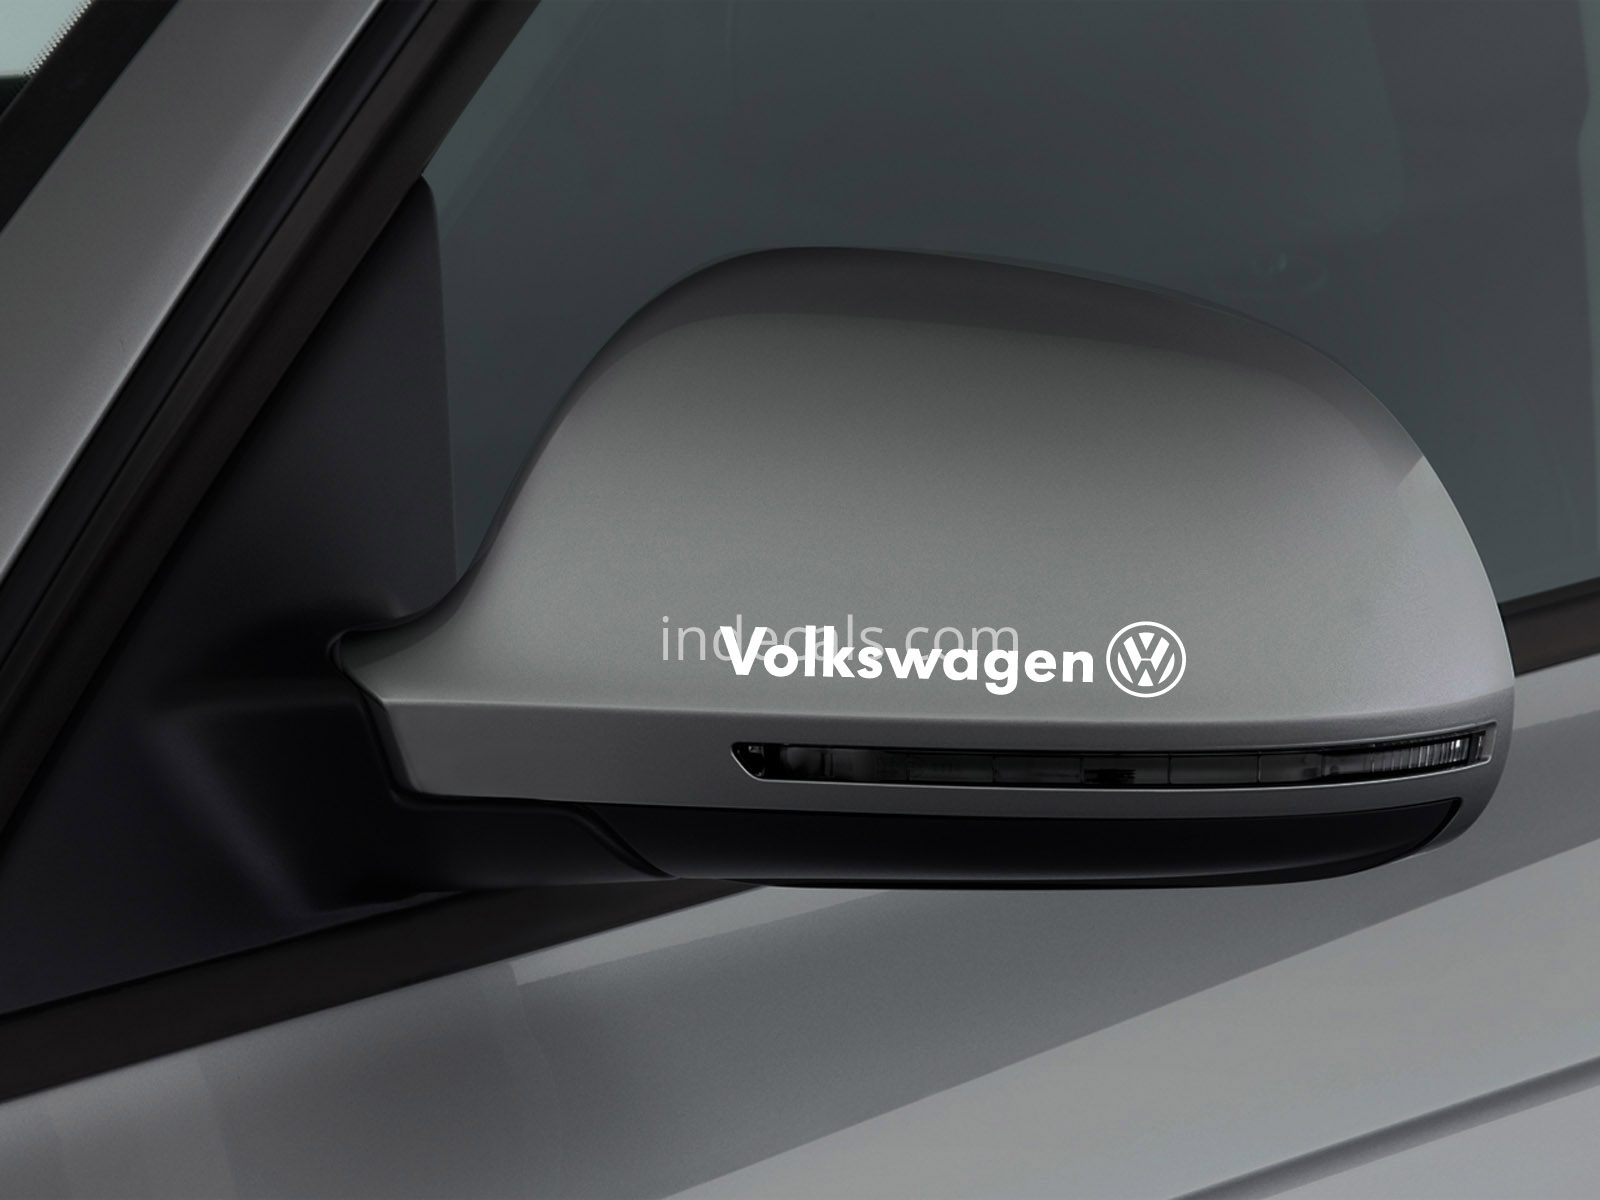 3 x Volkswagen Stickers for Mirror - White